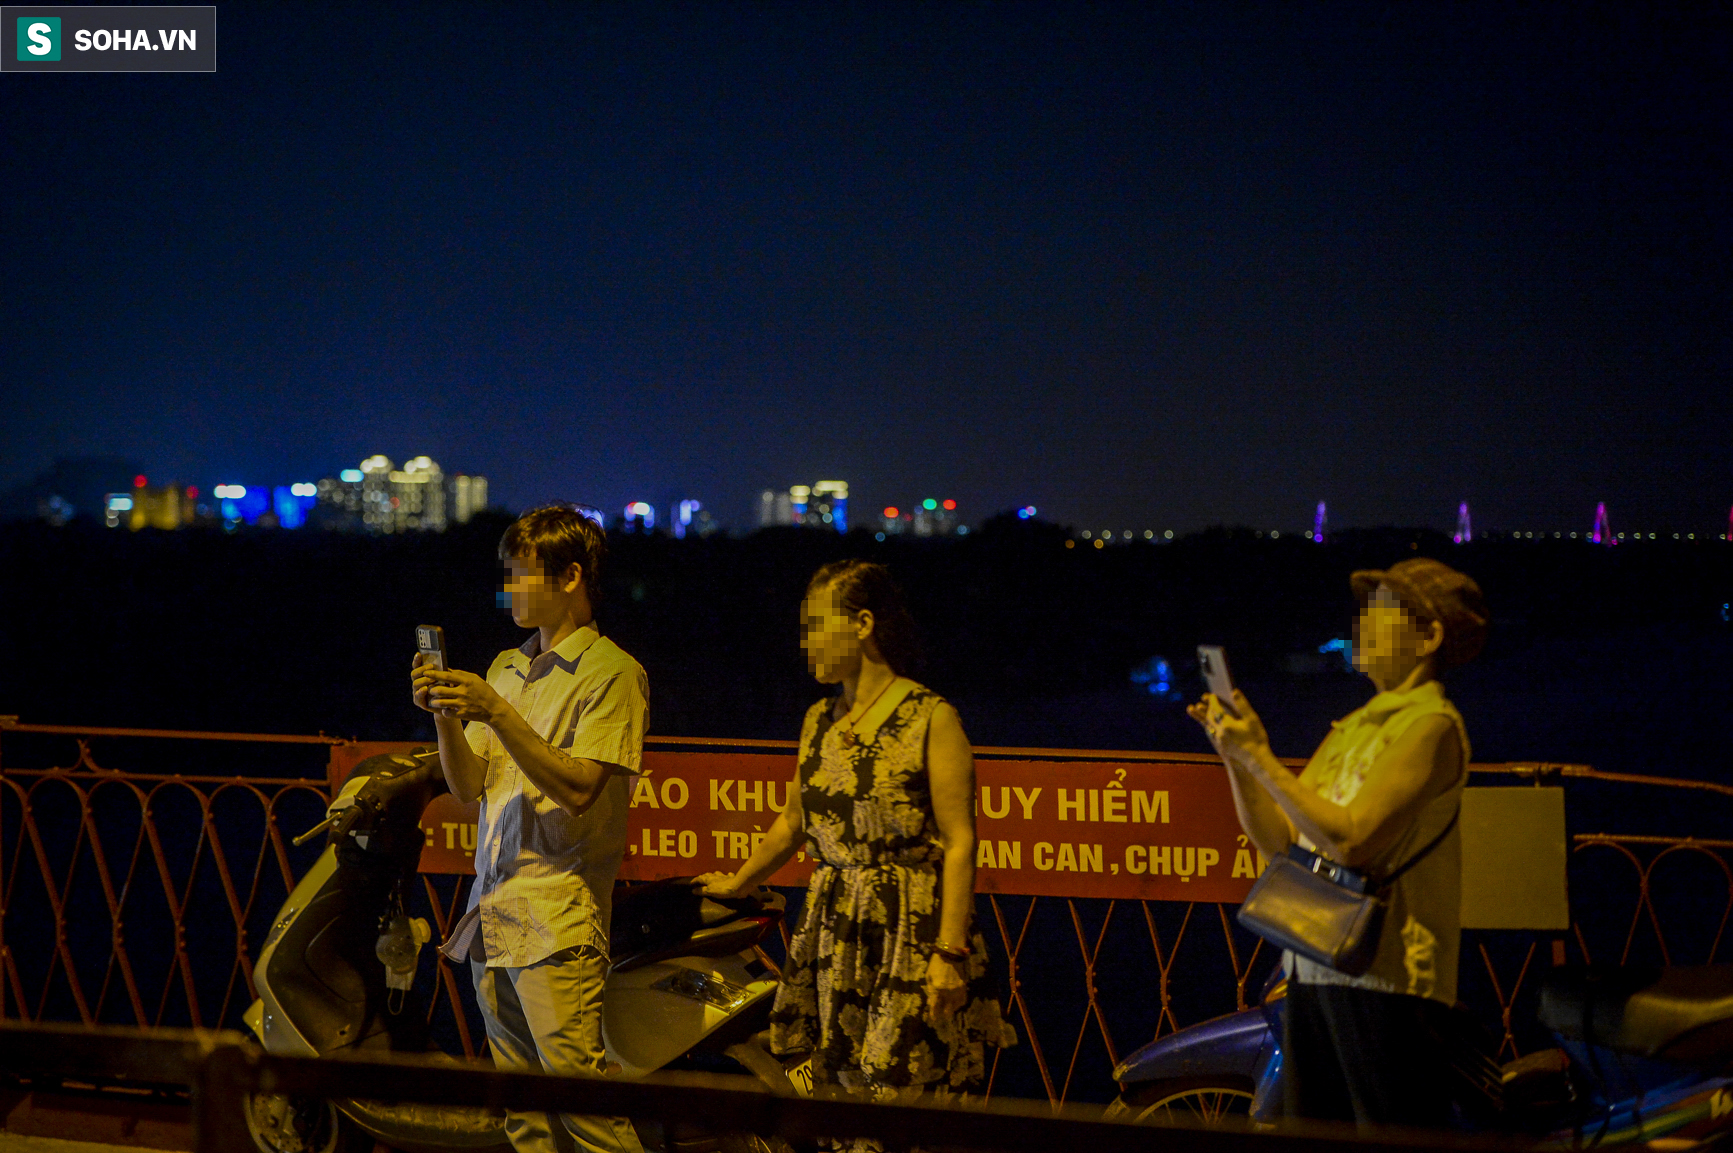 Hà Nội: Nam thanh nữ tú thản nhiên lên cầu Long Biên tâm sự, chụp ảnh, hóng mát bất chấp giãn cách xã hội - Ảnh 11.